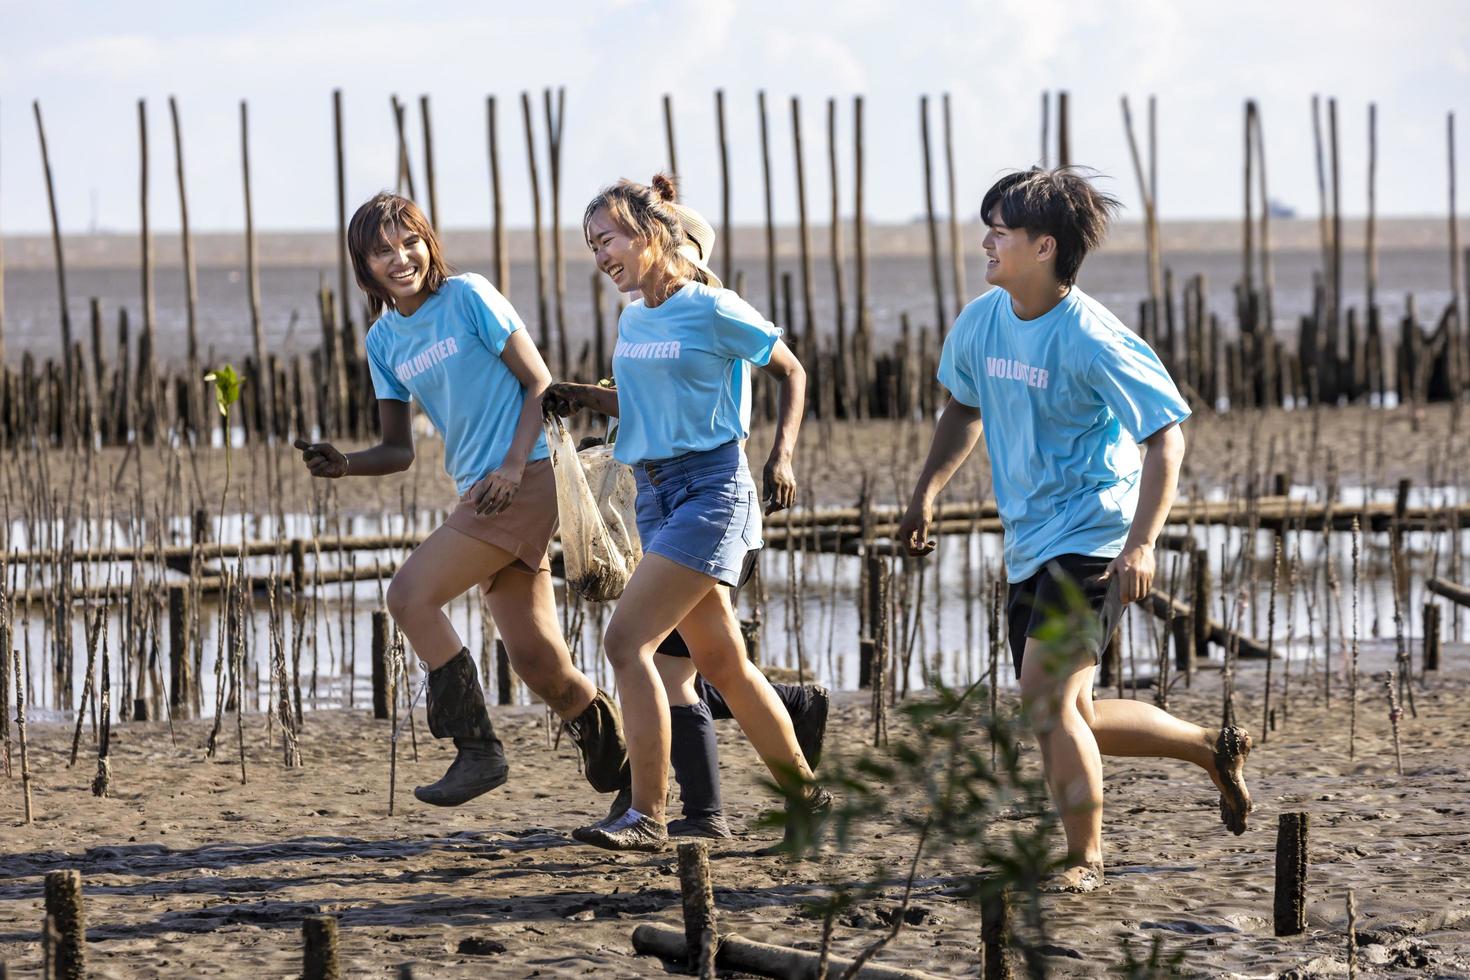 ein team von jungen und vielfältigen freiwilligen arbeitergruppen genießt die karitative sozialarbeit im freien bei der reinigung des müllprojekts im mangrovenwald foto